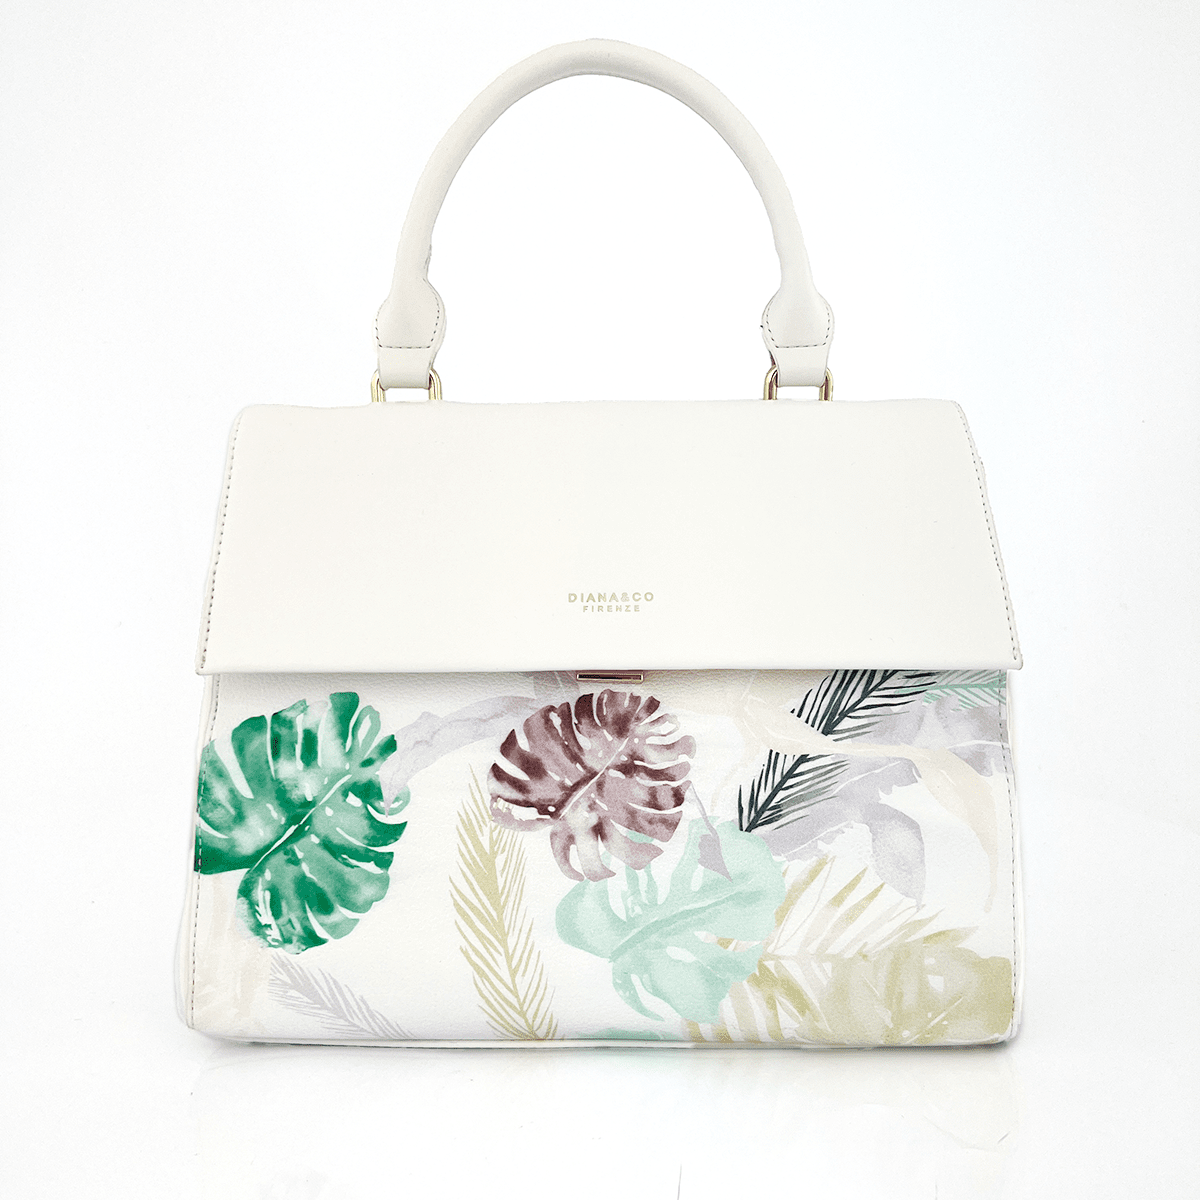 Diana & Co - Дамска чанта с флорален принт - бяла